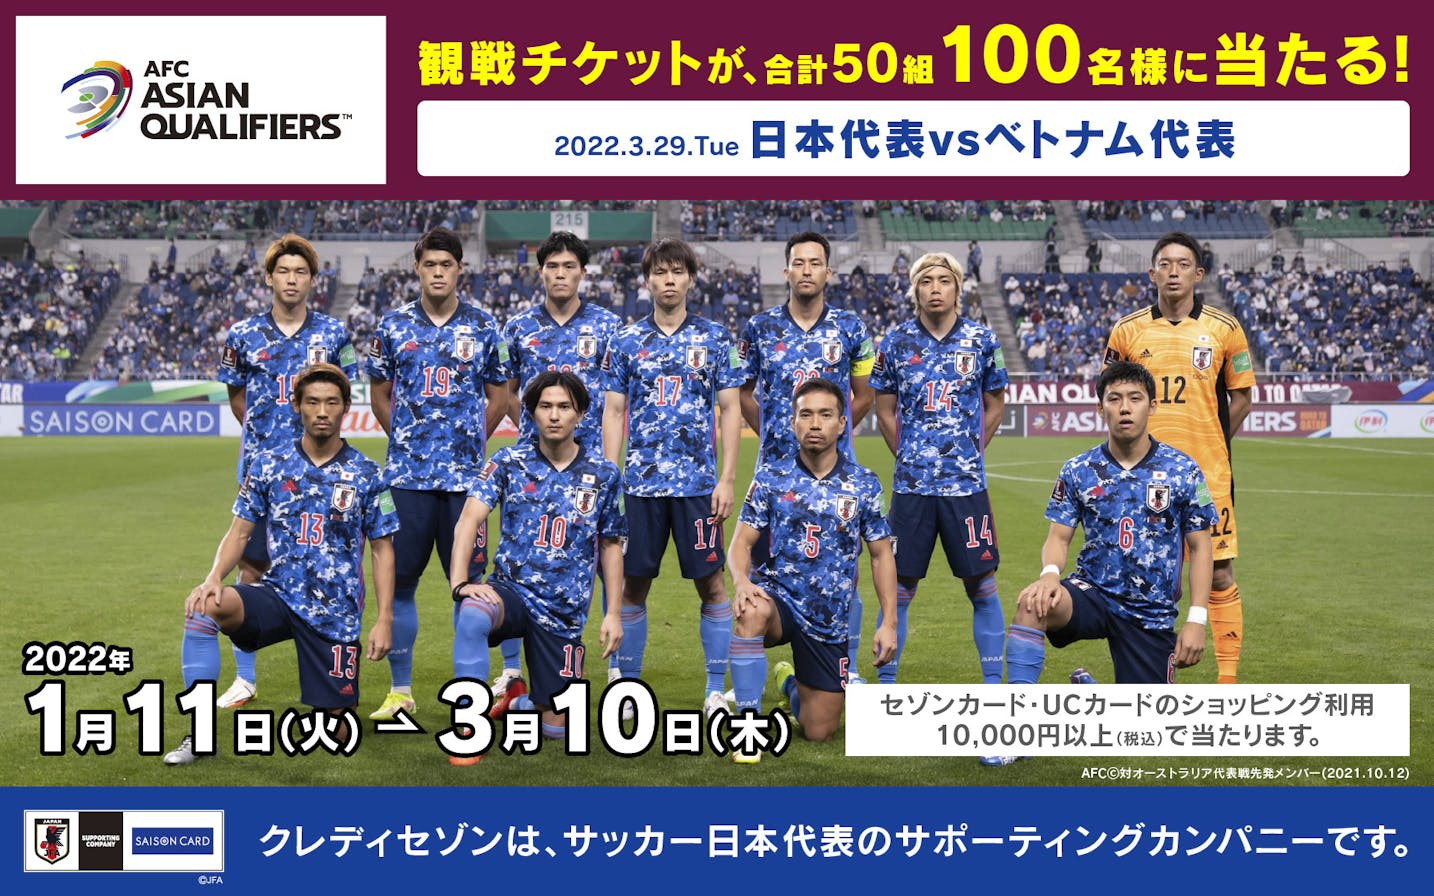 50組100名様にチケット当たる サッカー日本代表応援キャンペーン クレジットカードはセゾンカード